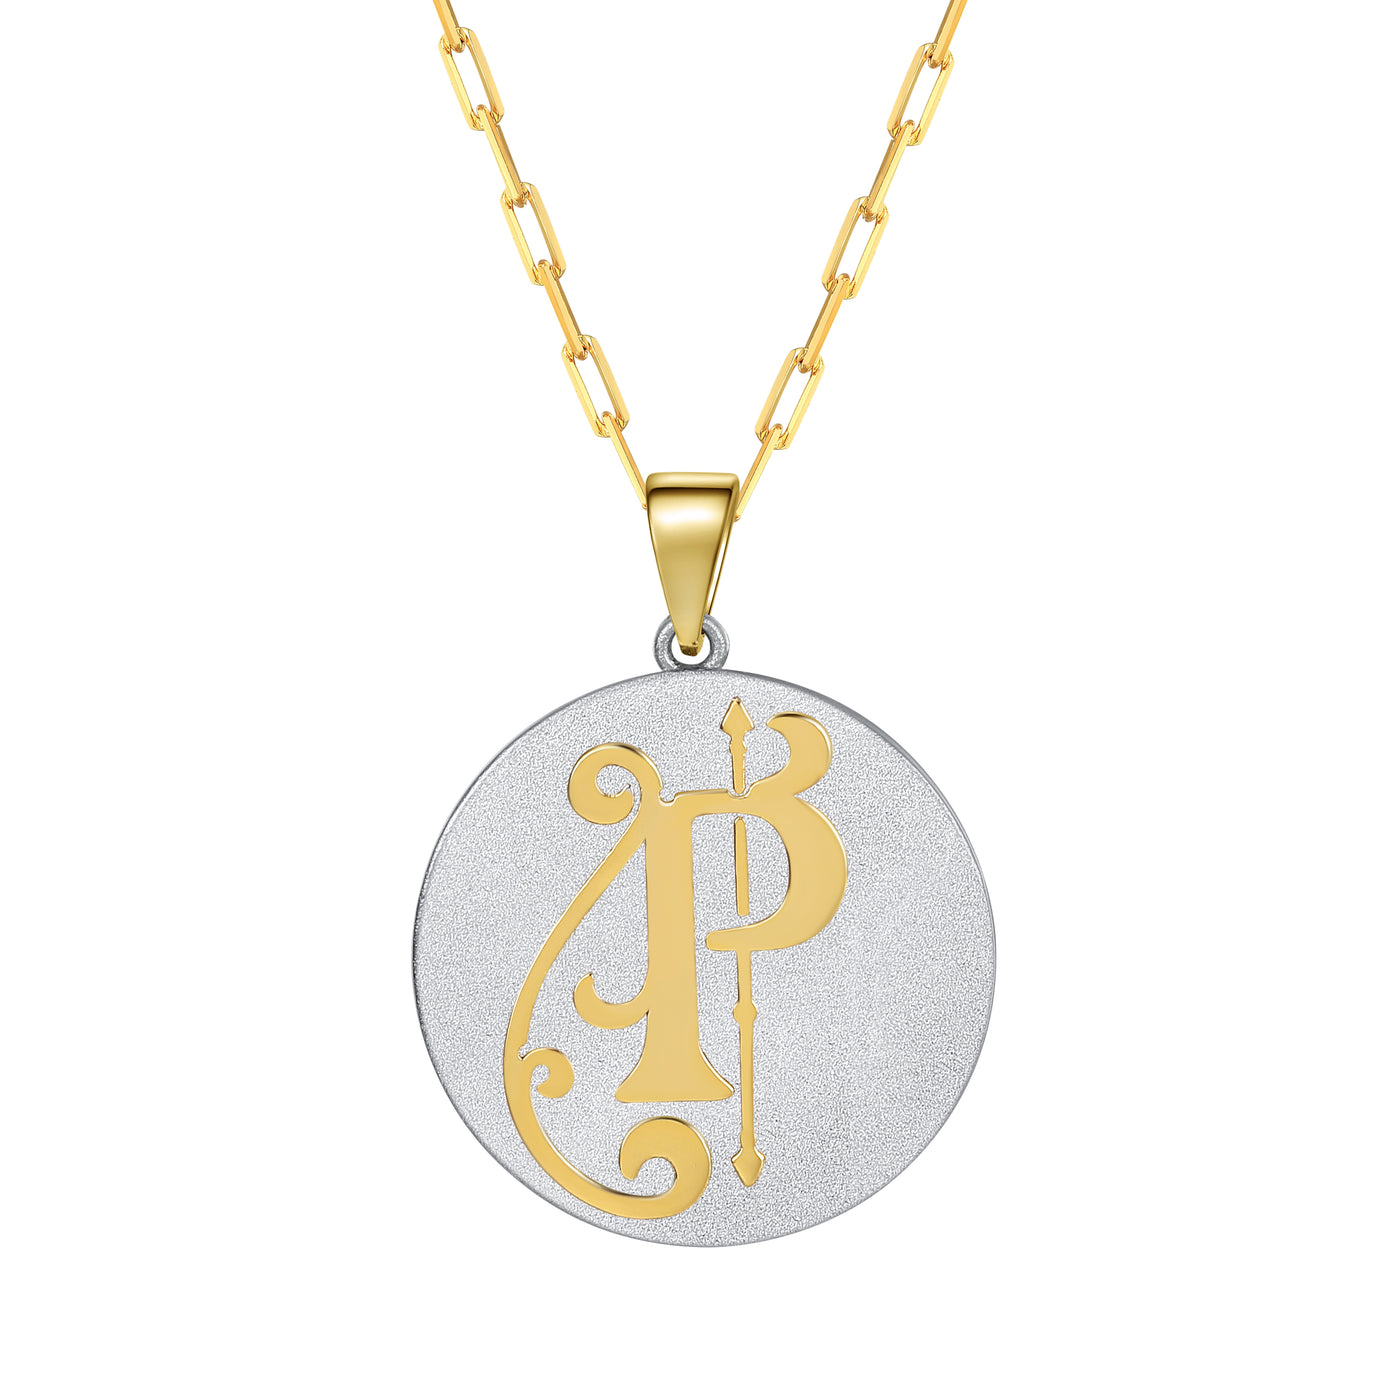 Saints & Saviors Fancy Initial P Pendant Necklace